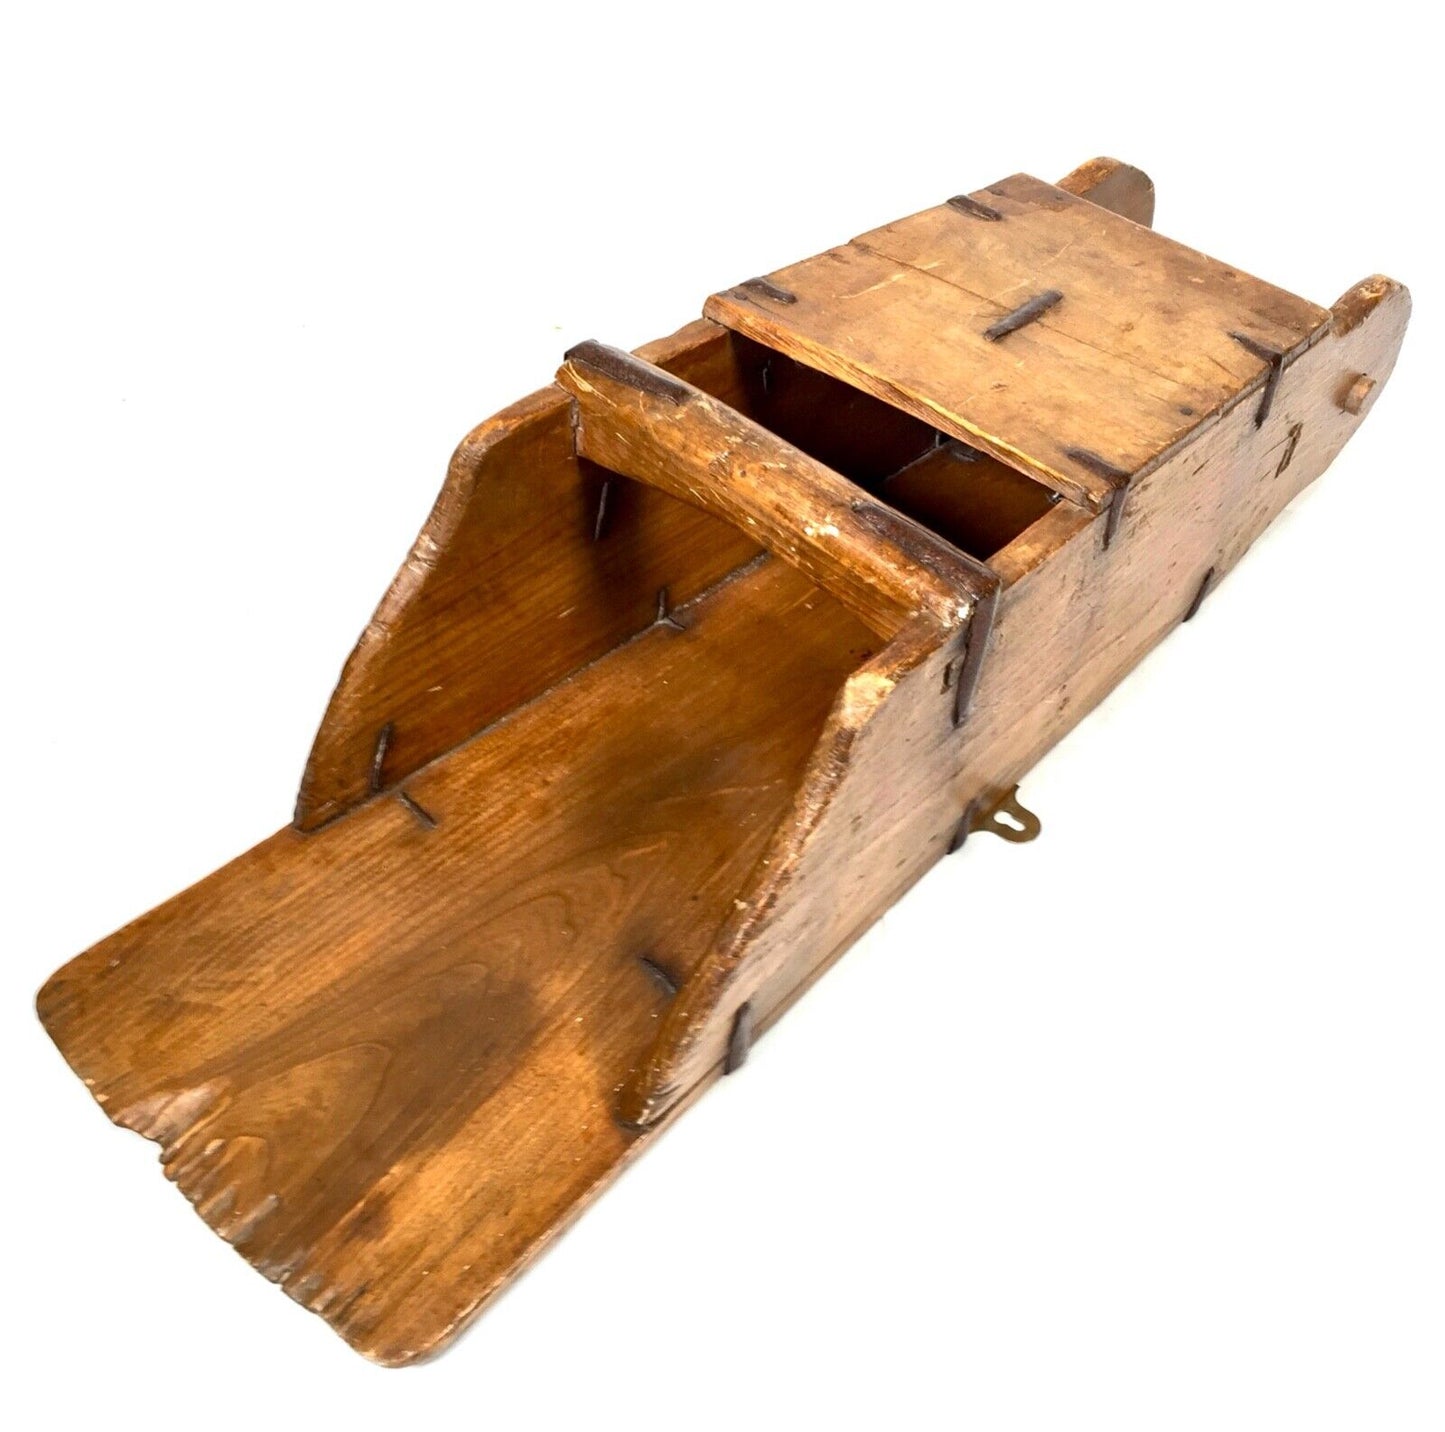 Antique Wooden 19th Century Grain Scoop / Rustic Kitchen Decor / Baguette Holder